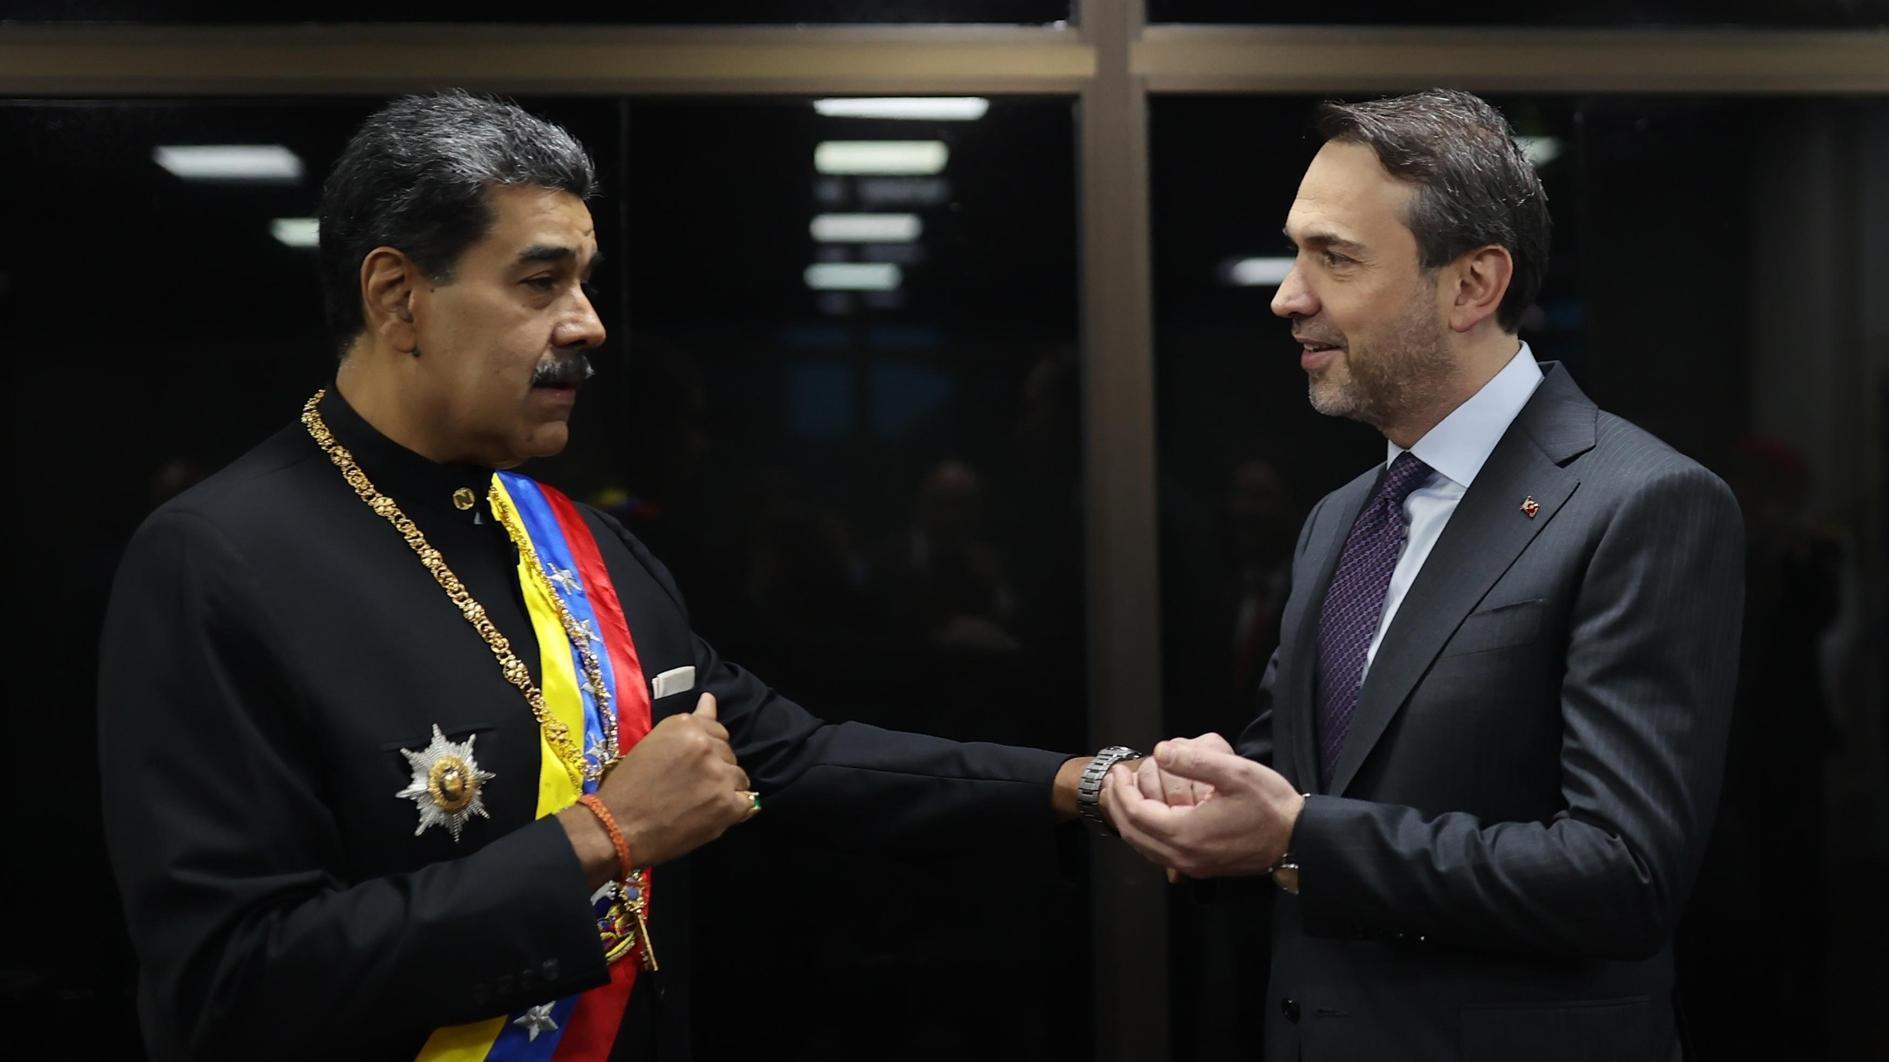 Türkiye wil de energiesamenwerking met Venezuela stimuleren